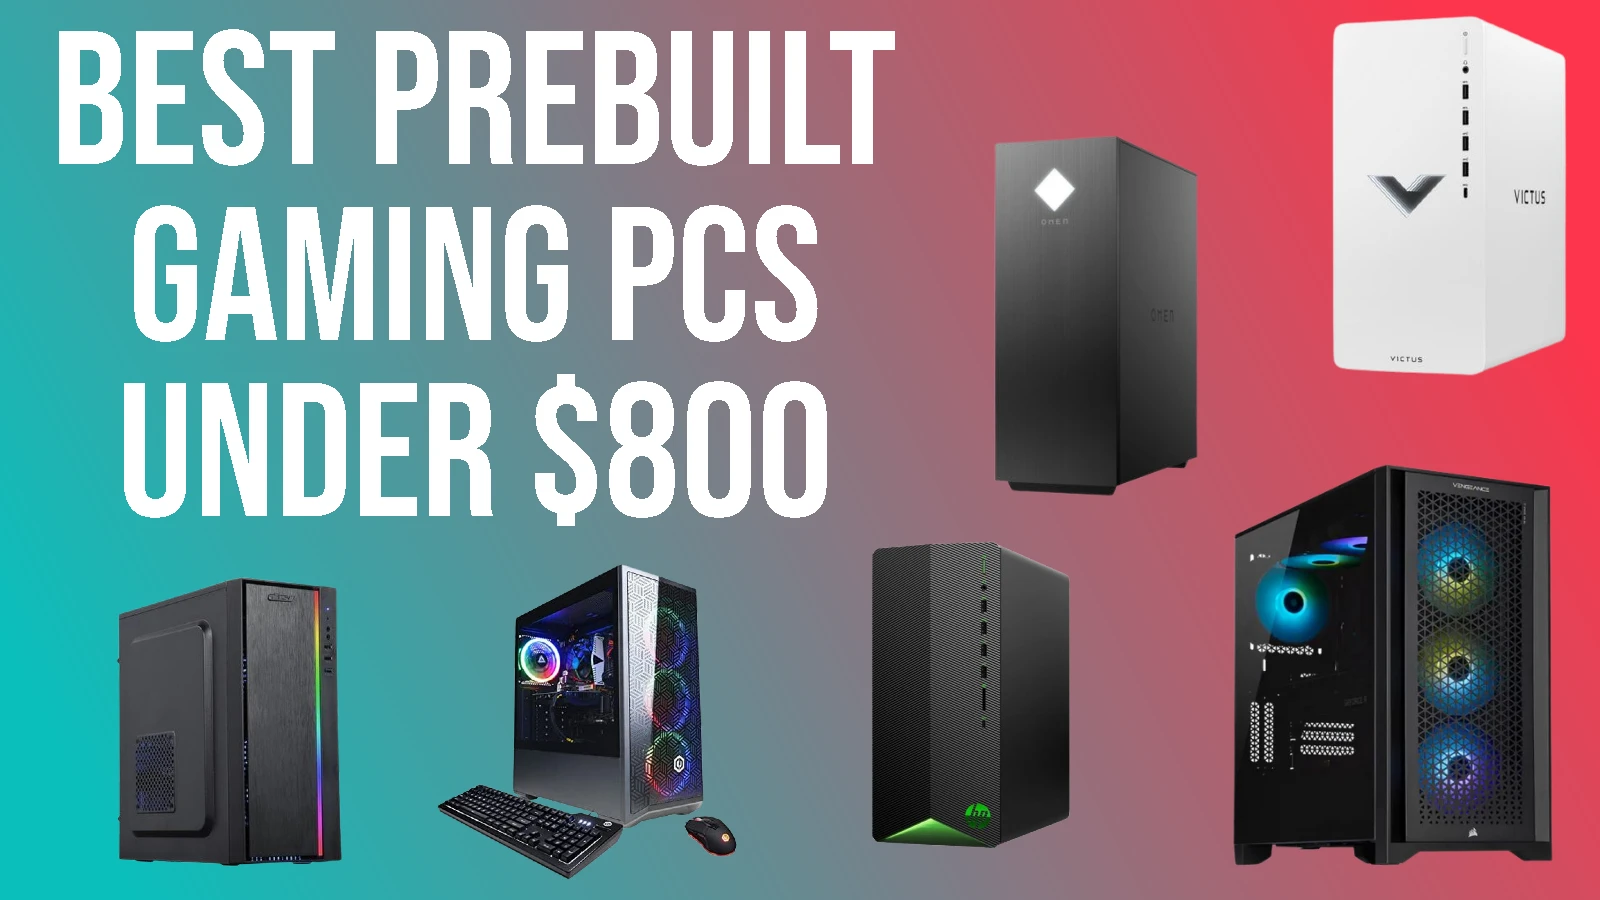 Best prebuilt gaming PCs under $800